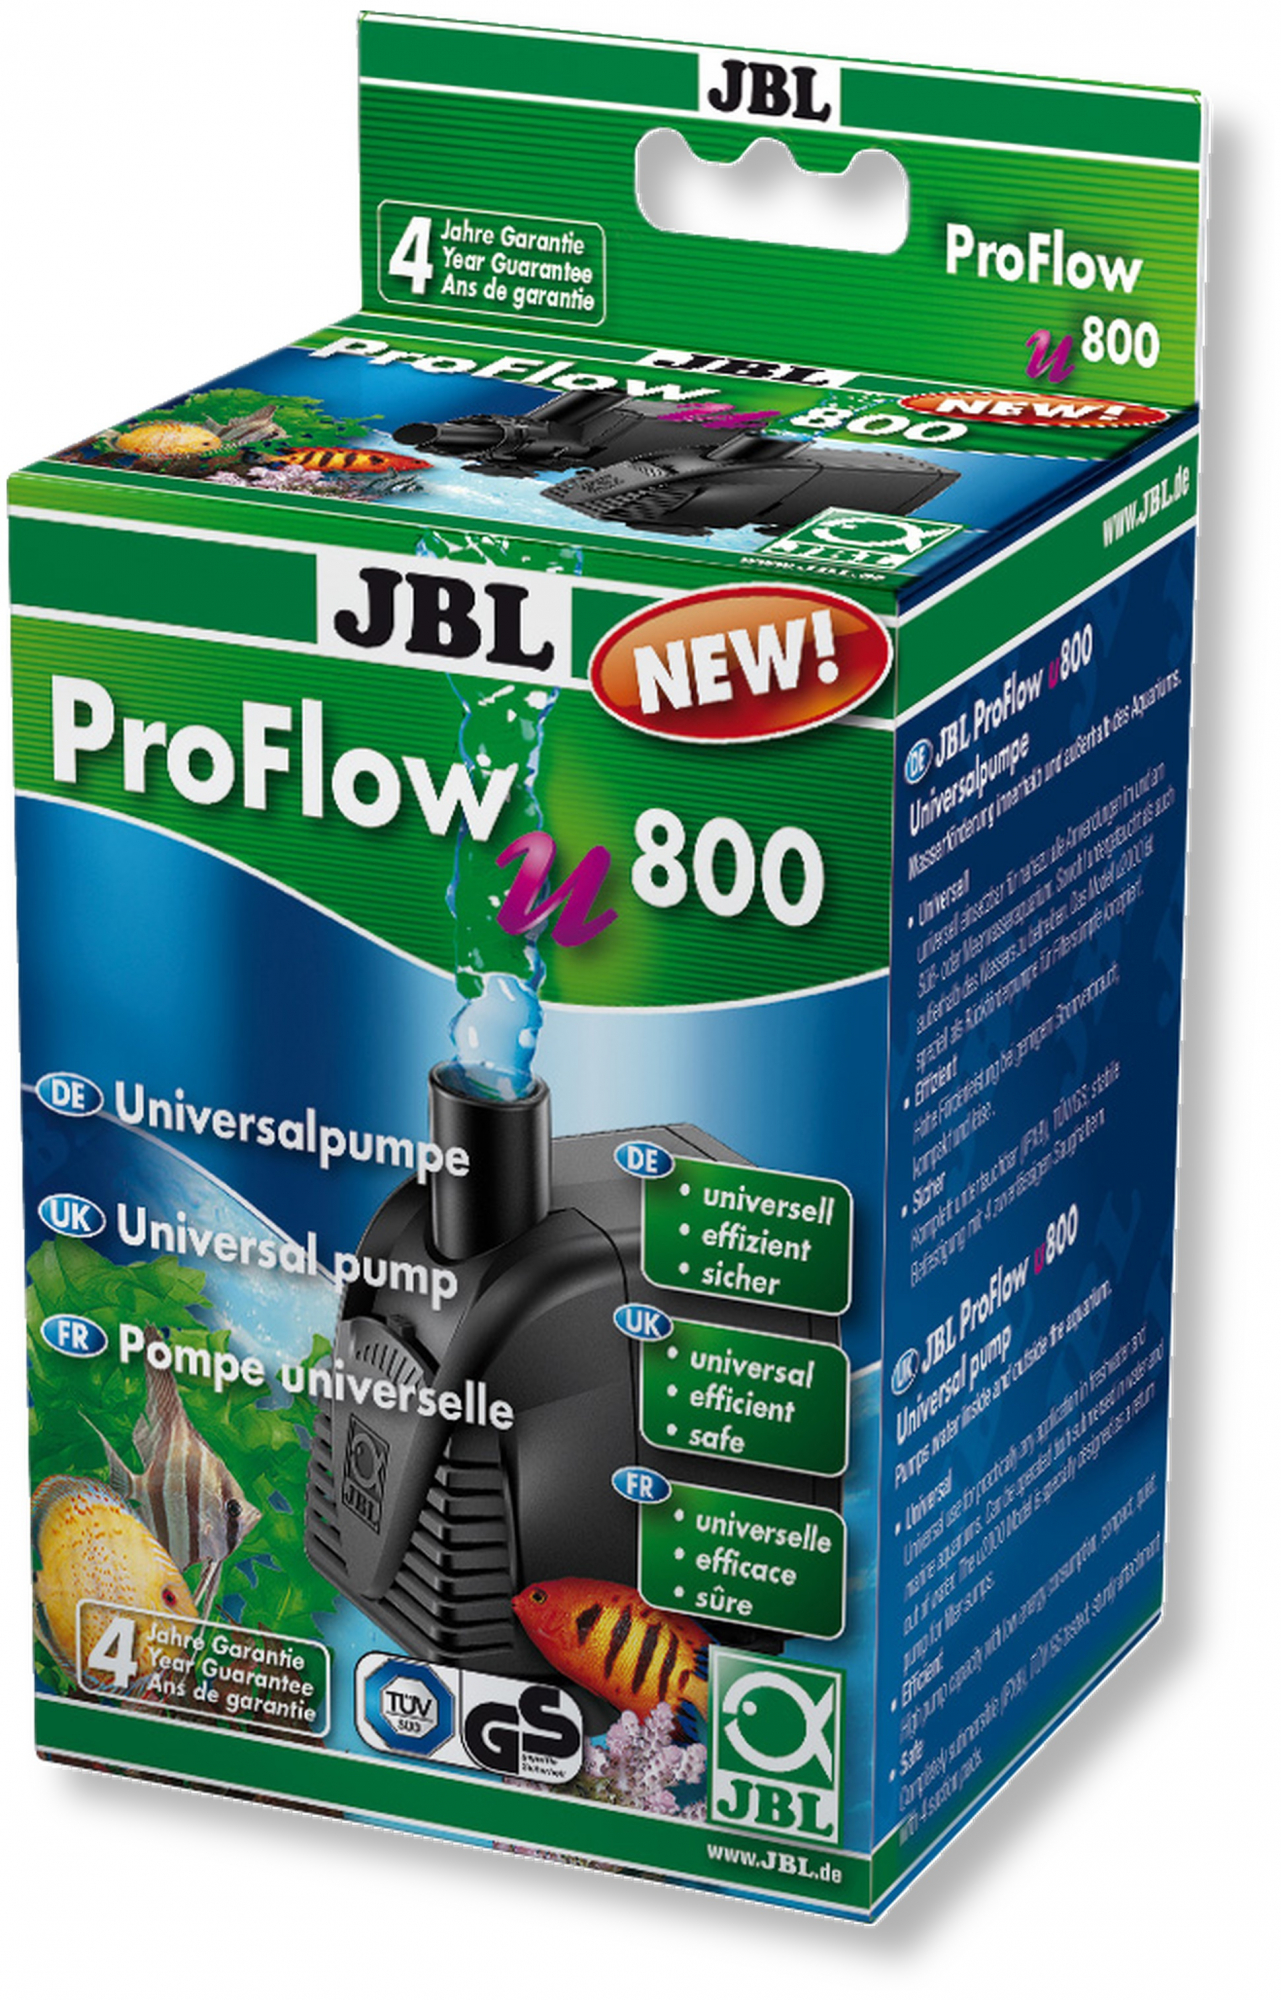 JBL Proflow Bomba universal - vários modelos disponíveis